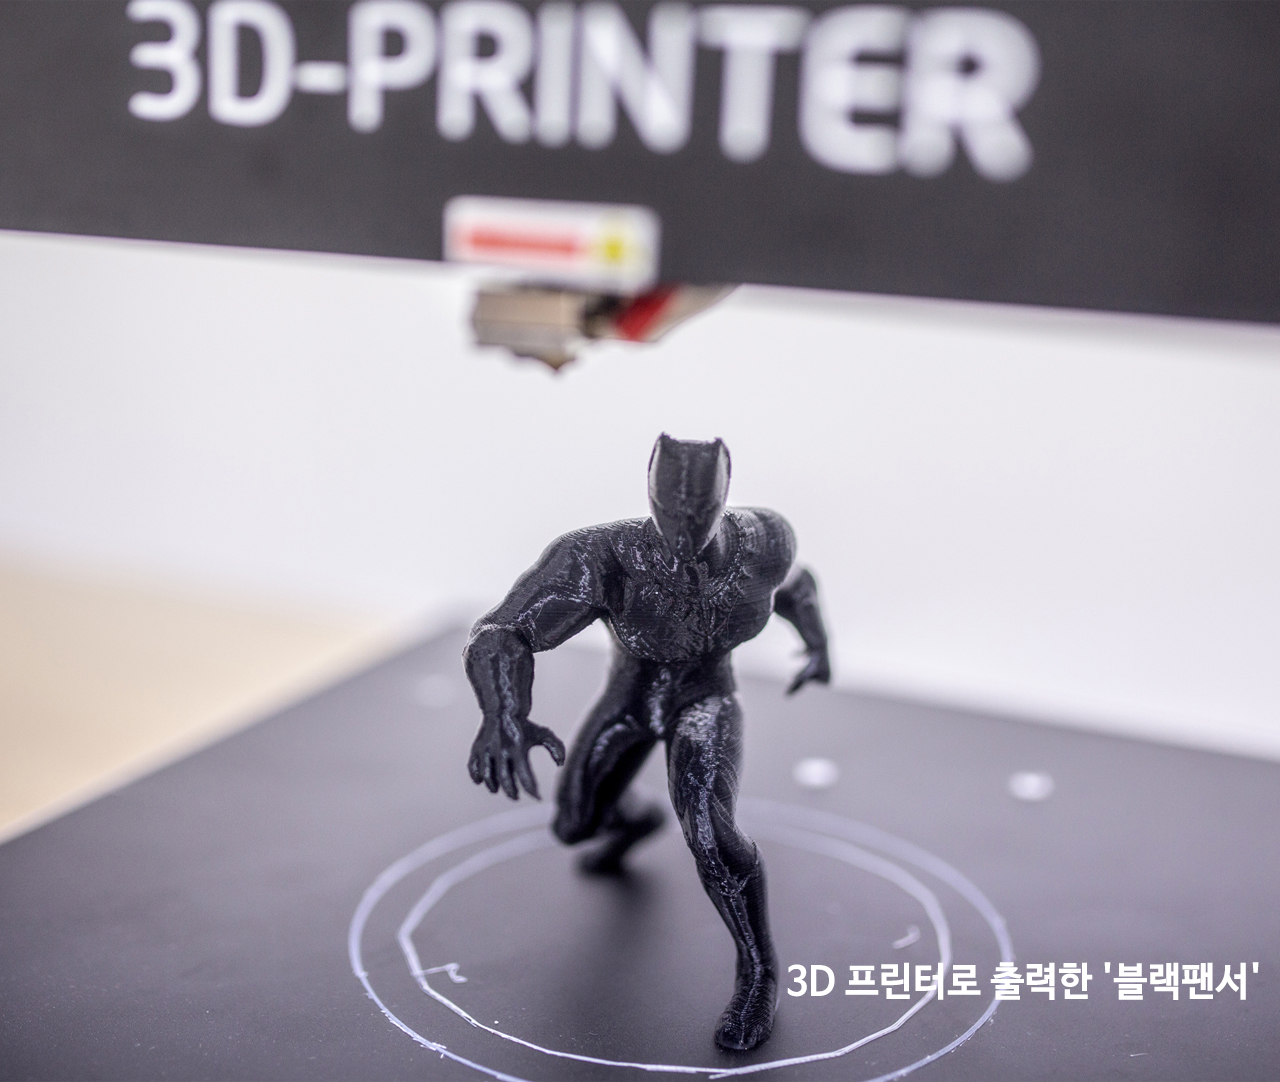 김해시 사회적공동체지원센터 입주 기업 3D 프린팅 전문 업체 '이즈굿'1